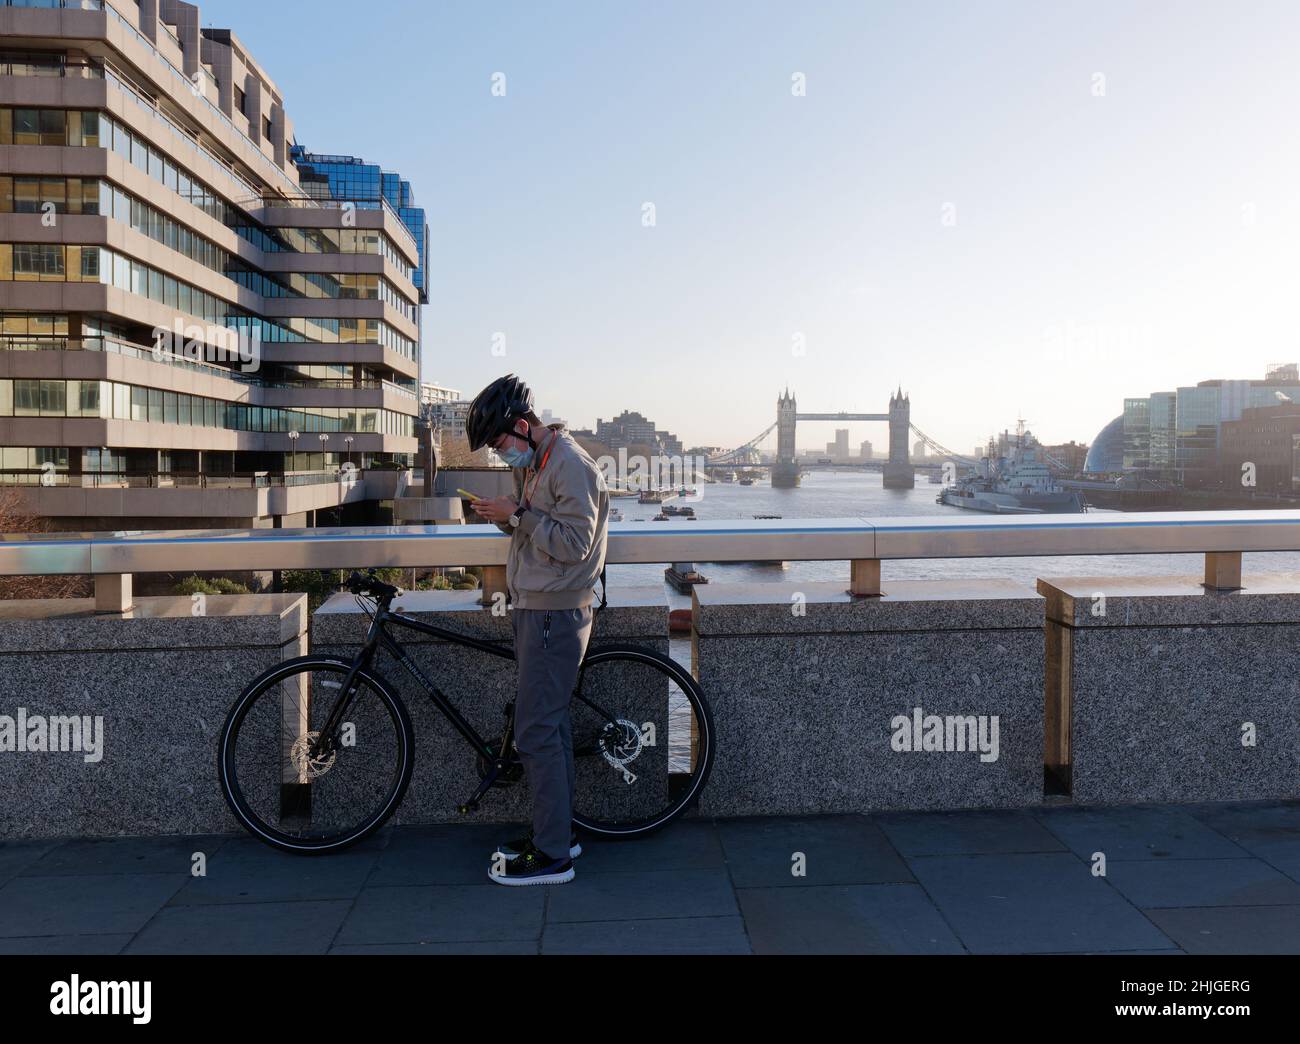 Londres, Grand Londres, Angleterre, 5 janvier 2022: Cycliste portant un masque pendant les contrôles covid téléphone sur le pont de Londres avec Tower Bridge derrière. Banque D'Images